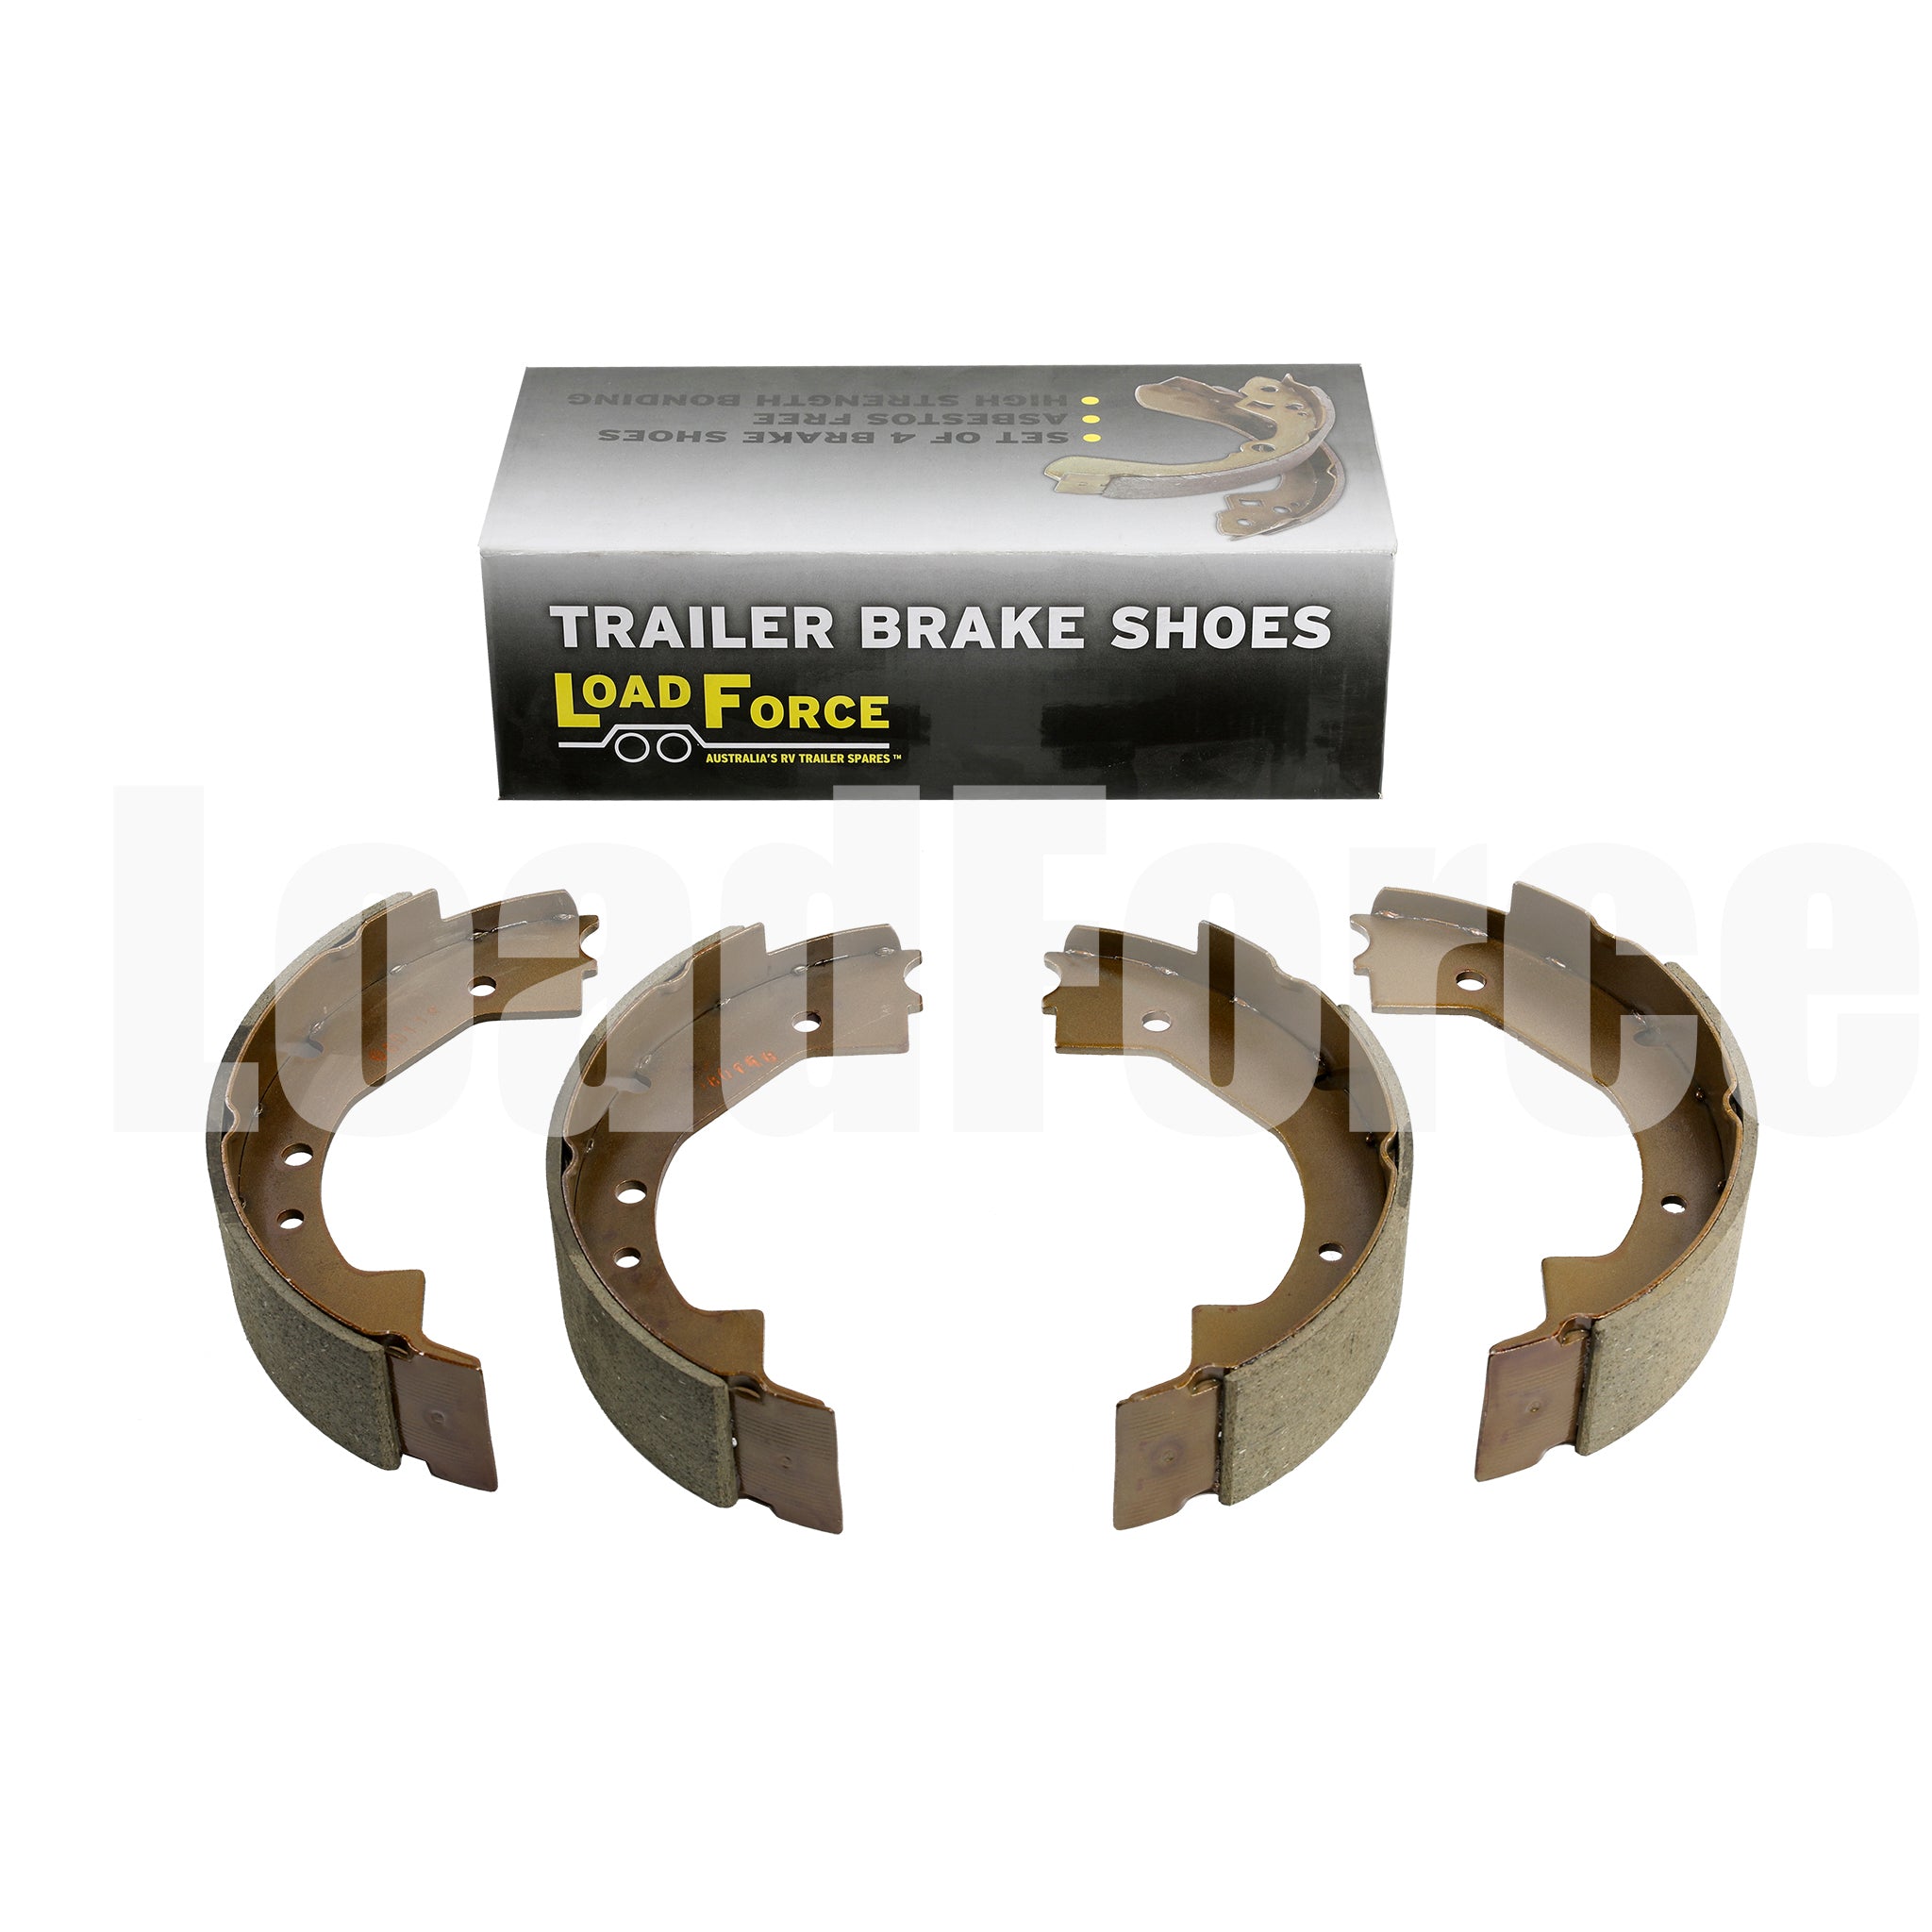 Brake shoes for 10 inch Dexter self-adjusting electric brakes - set of 4